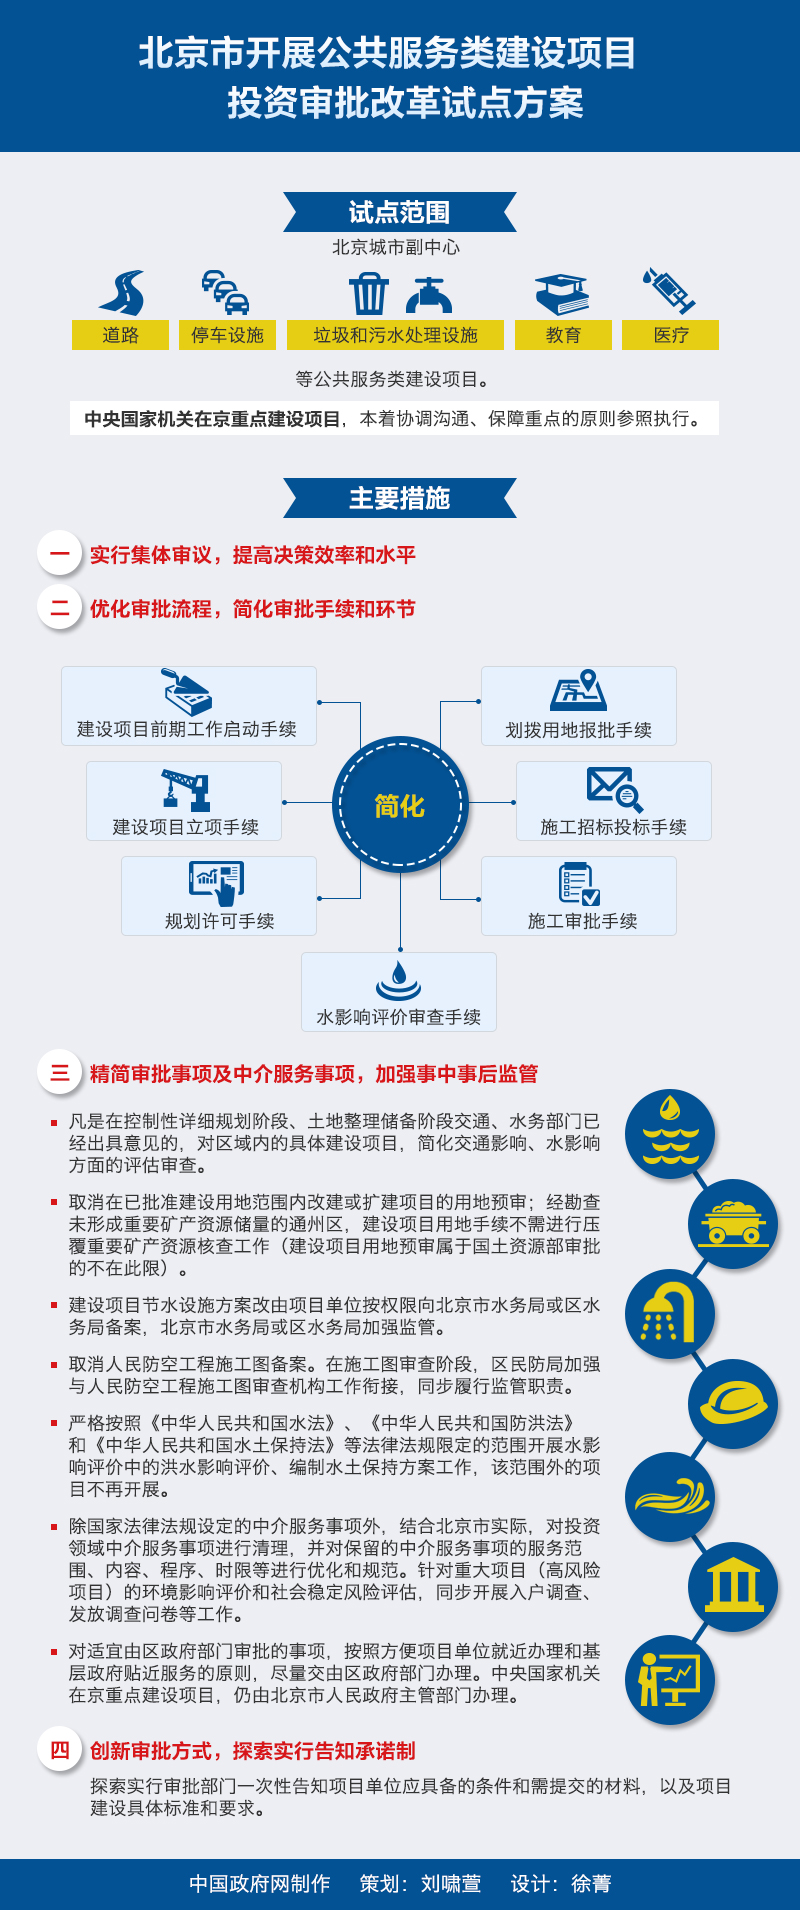 图解:北京市开展公共服务类建设项目投资审批